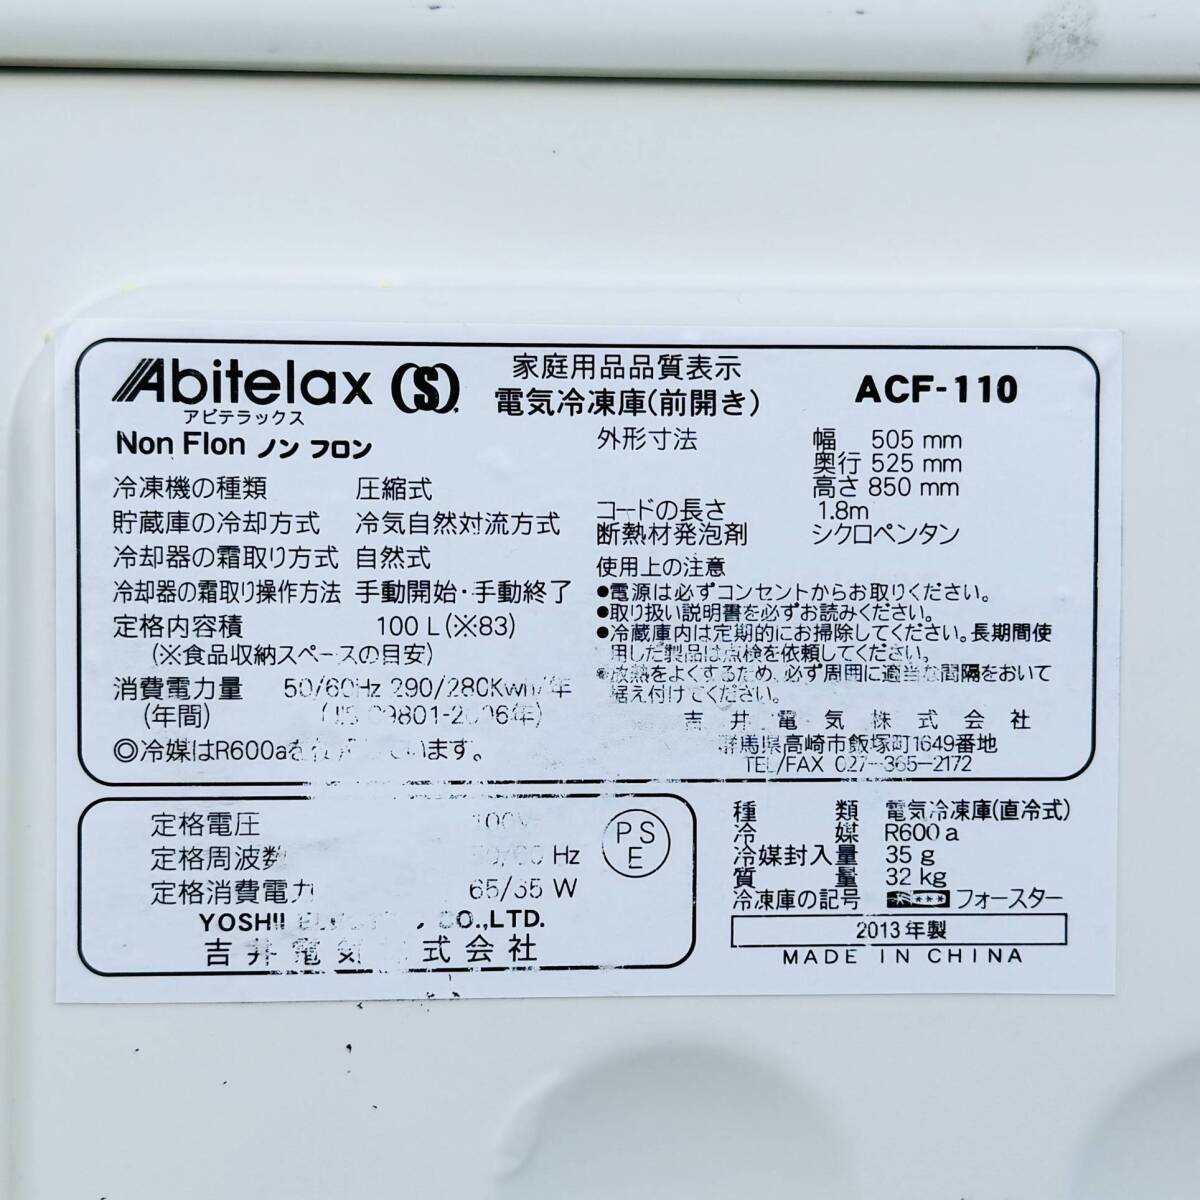 甲MJ17600 クリーニング済 動作確認済 2013年製 100L アビテラックス ノンフロン電気冷凍庫 ACF-110 ストッカー フリーザー 白色の画像4